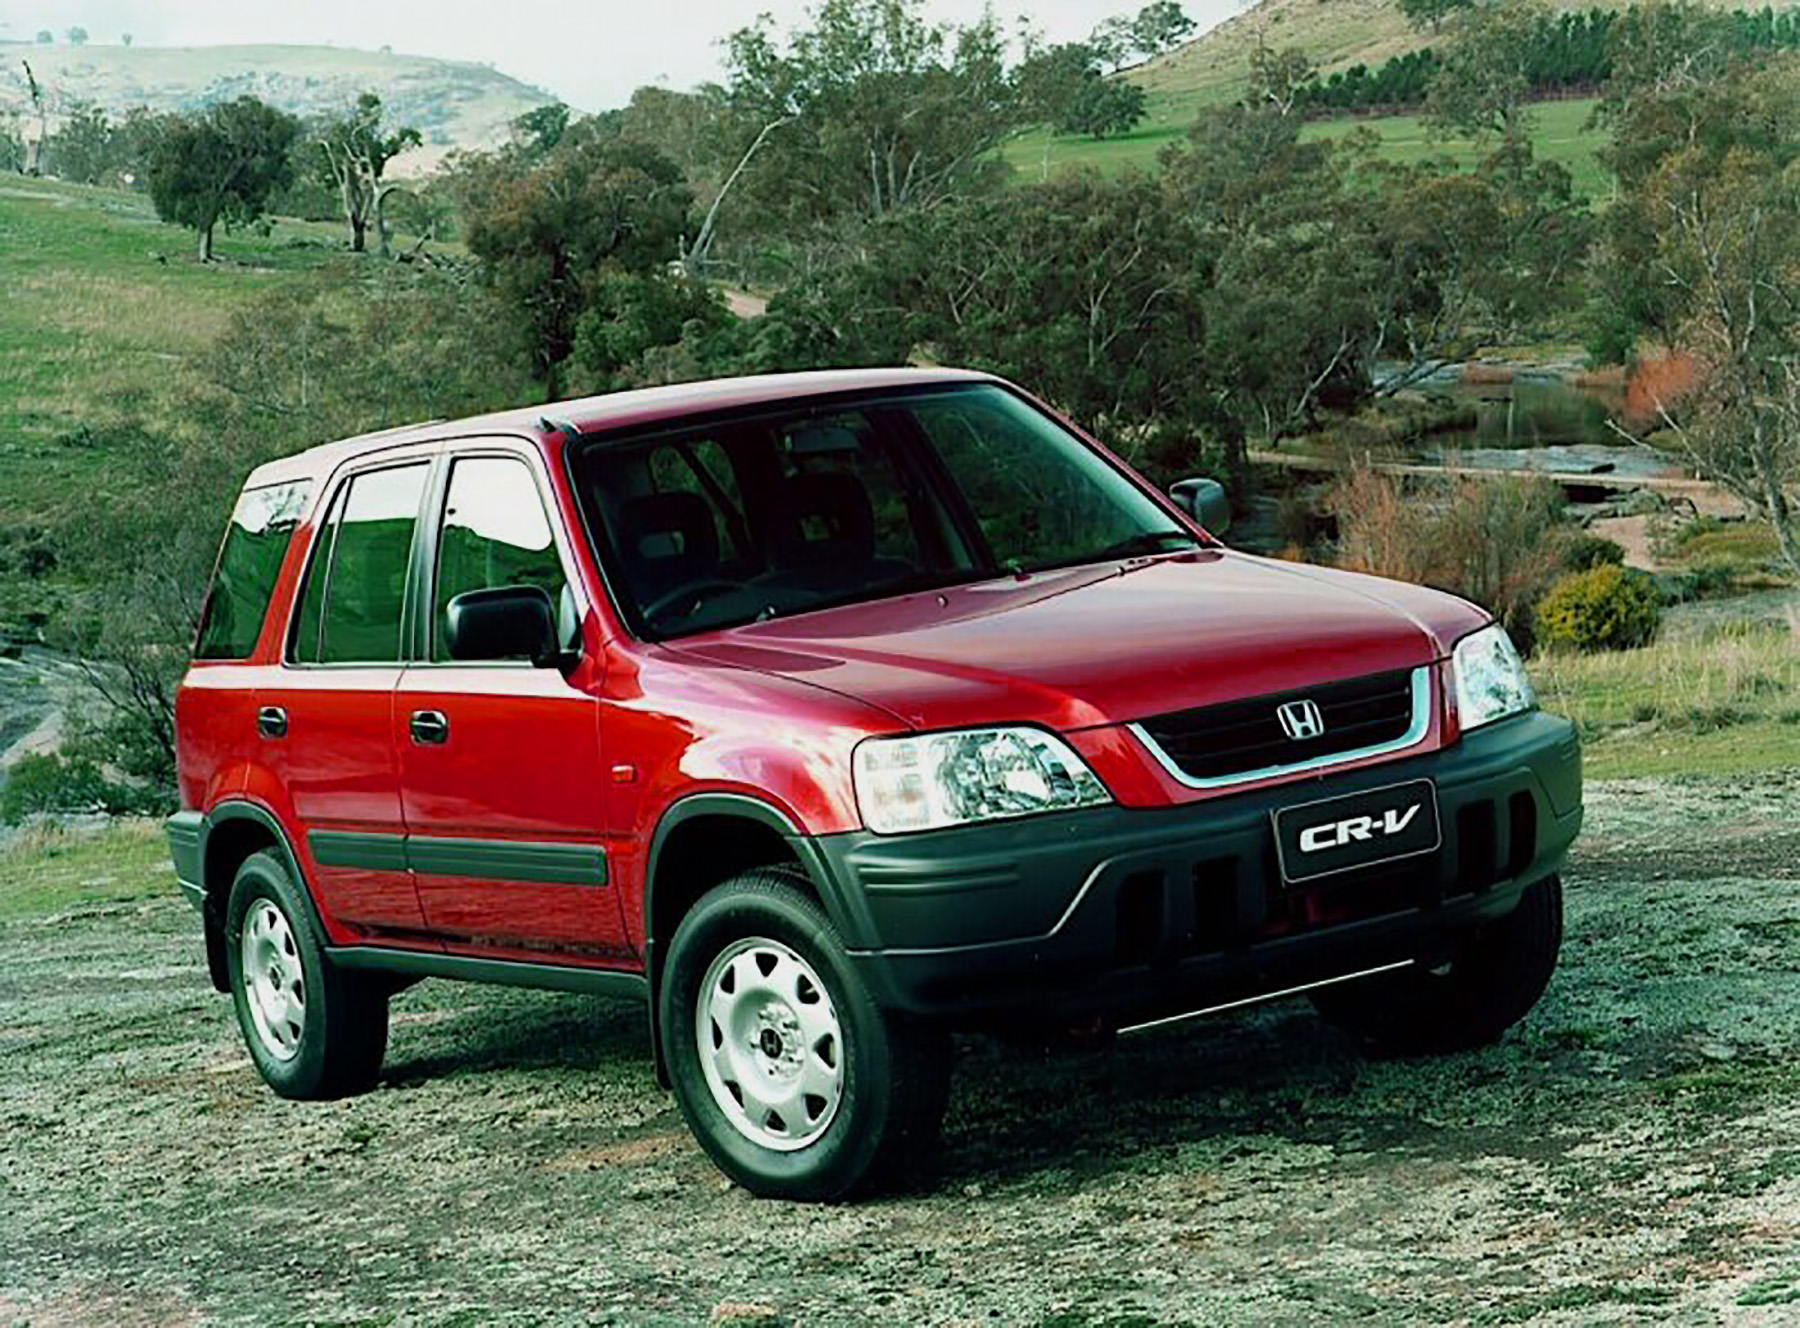 Honda crv 98 год. Honda CRV 1997. Honda CRV rd1. Honda CR-V rd1 1997. Honda CRV 1.